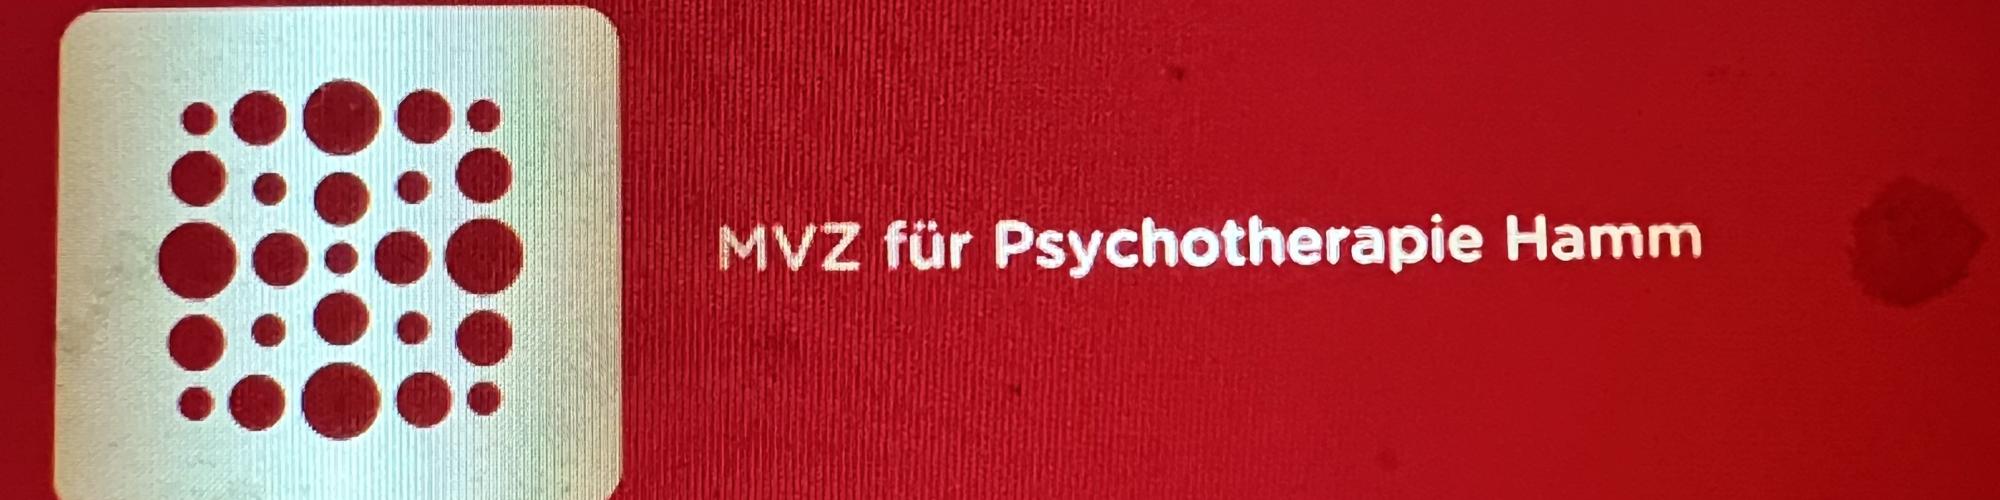 MVZ Für Psychotherapie Hamm